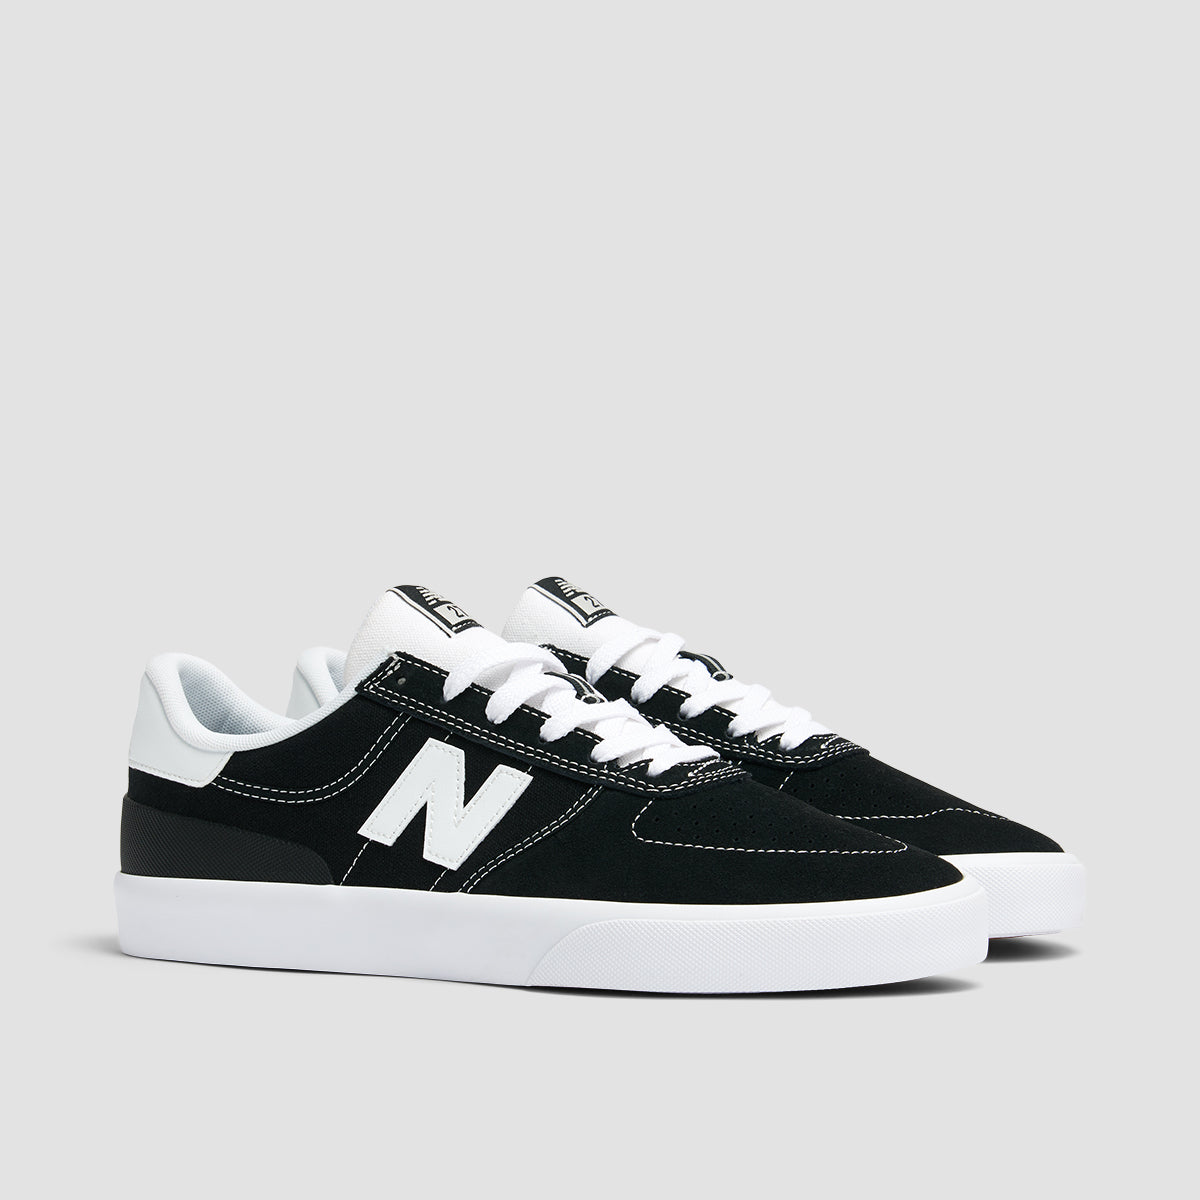 New Balance Numeric 272 Shoes - Black/White